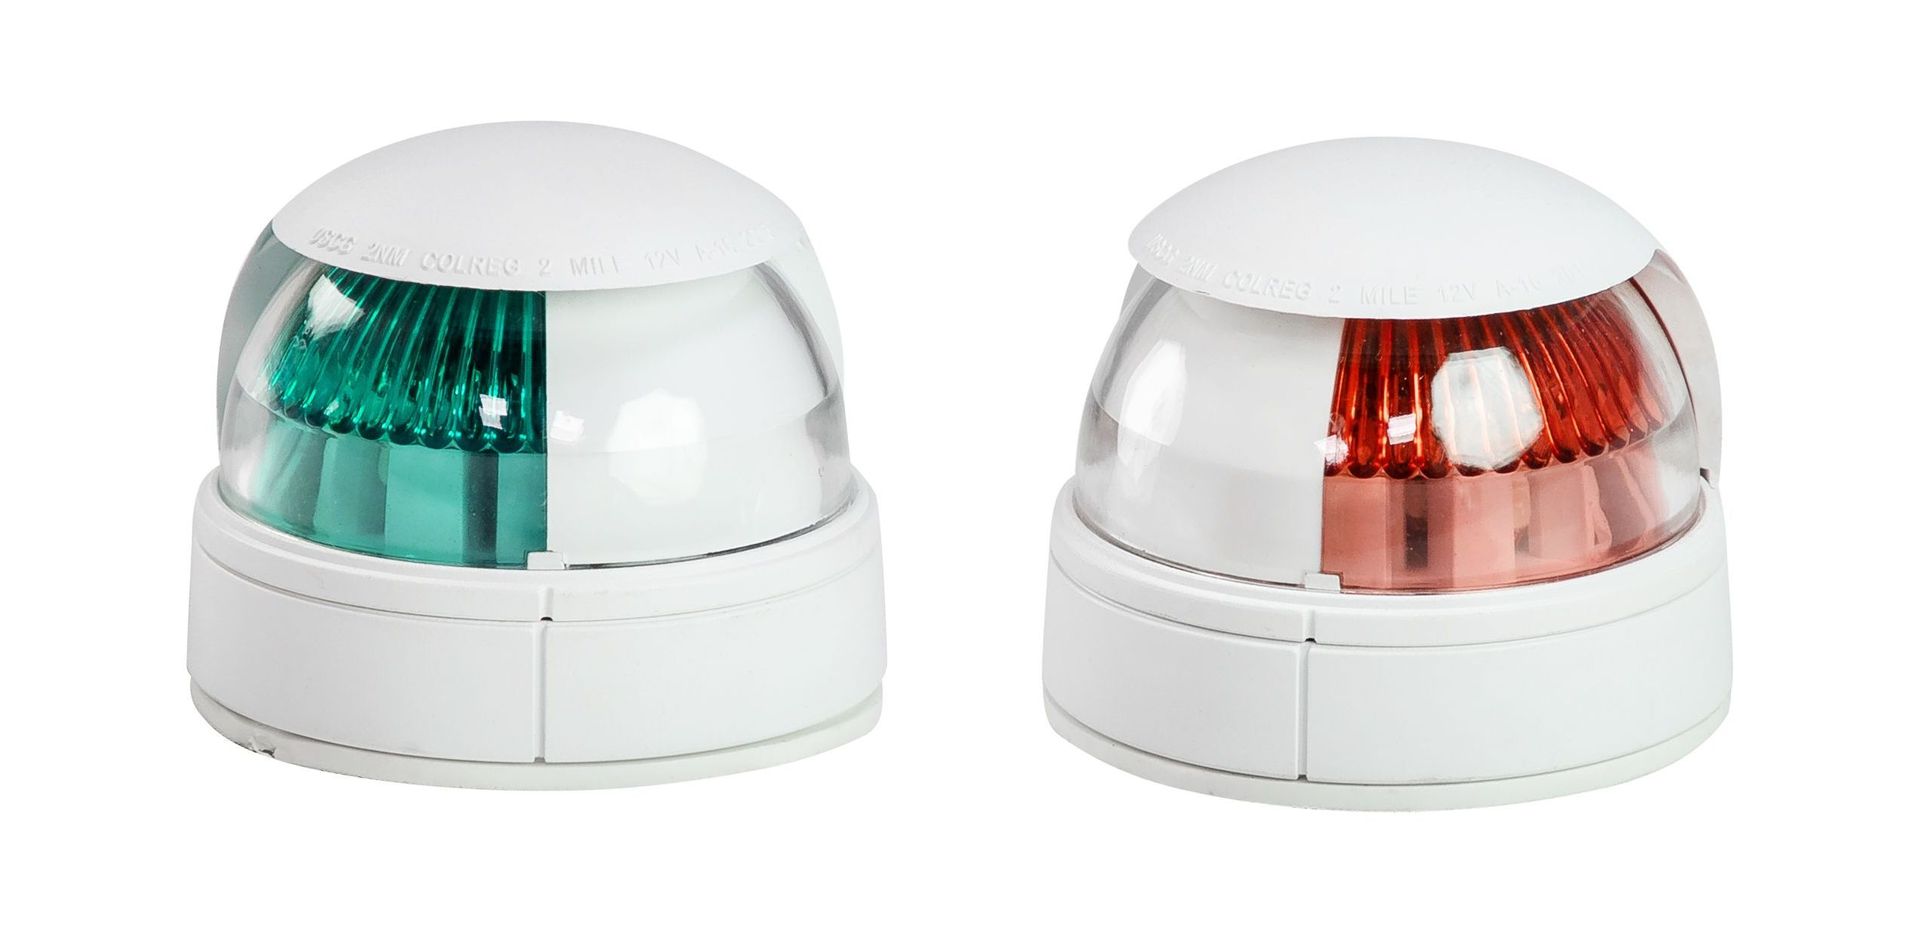 Огни ходовые светодиодные, комплект C91076 огни ходовые 87х99 мм комплект красный зеленый led 12 24 в lpsdlptled0481